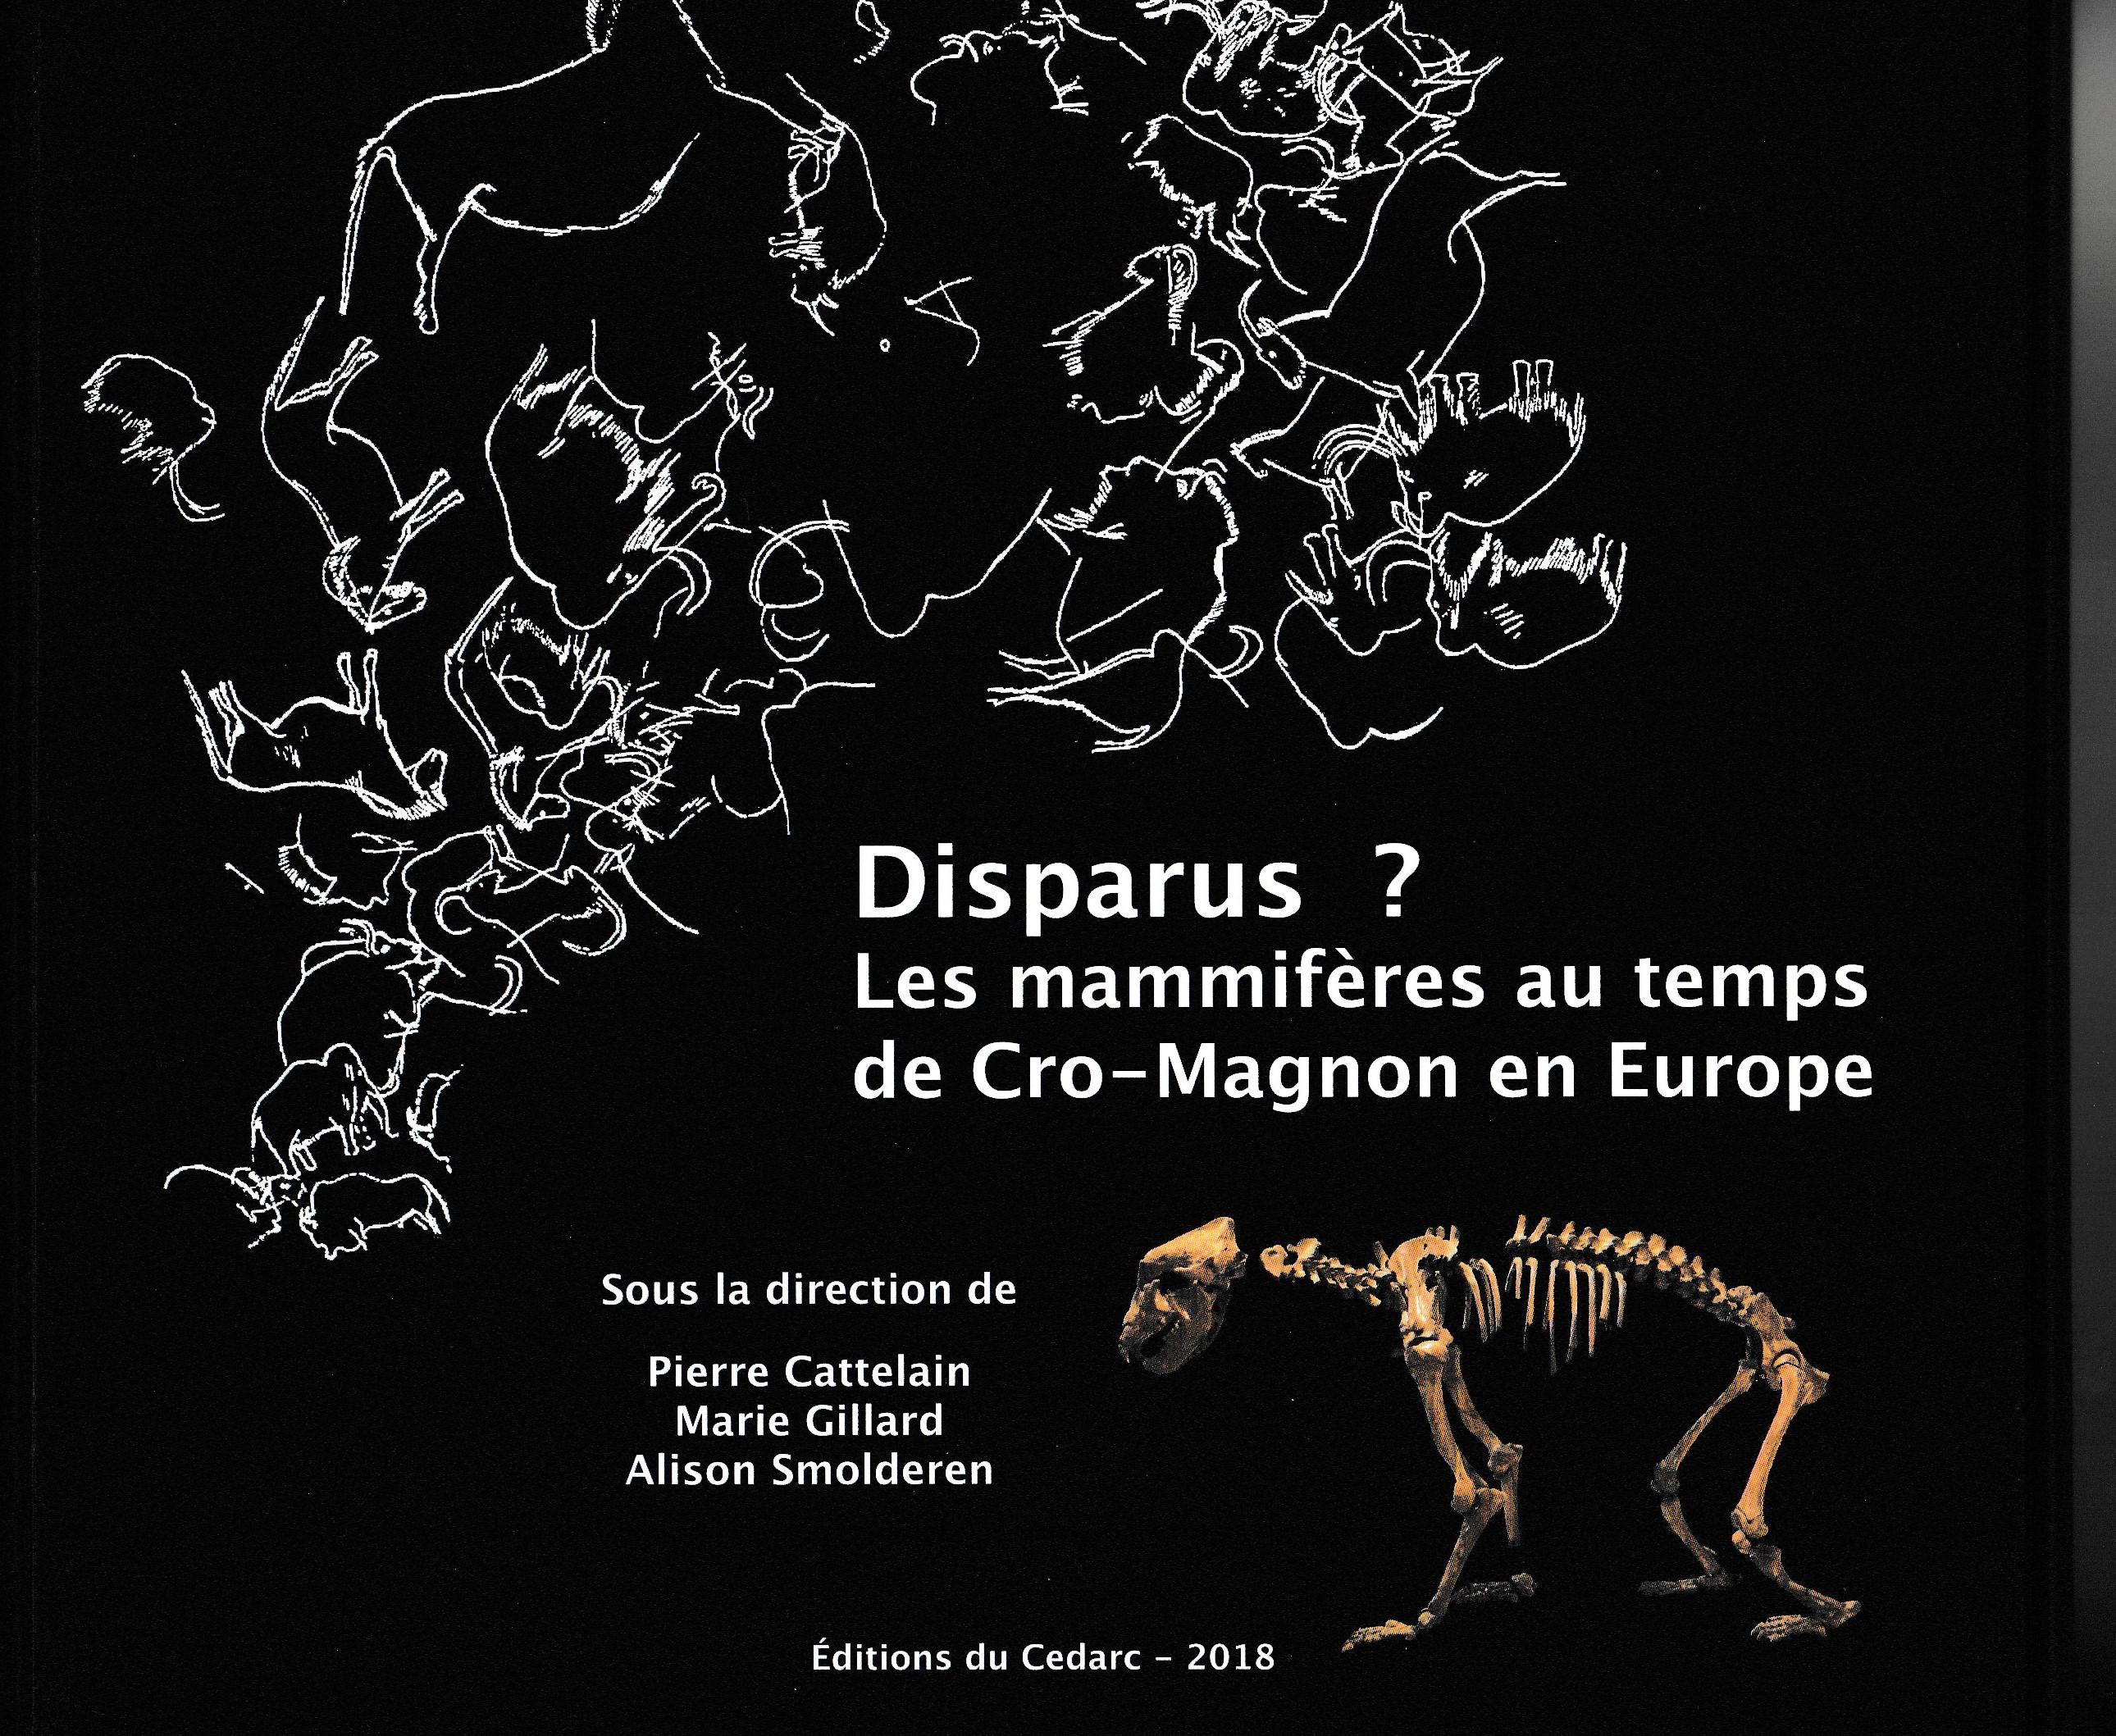 Disparus ? Les mammifères au temps de Cro-Magnon en Europe, (cat. expo. Musée du Malgré-Tout, Treignes, mai-nov. 2018), 2018, 360 p., 400 fig.